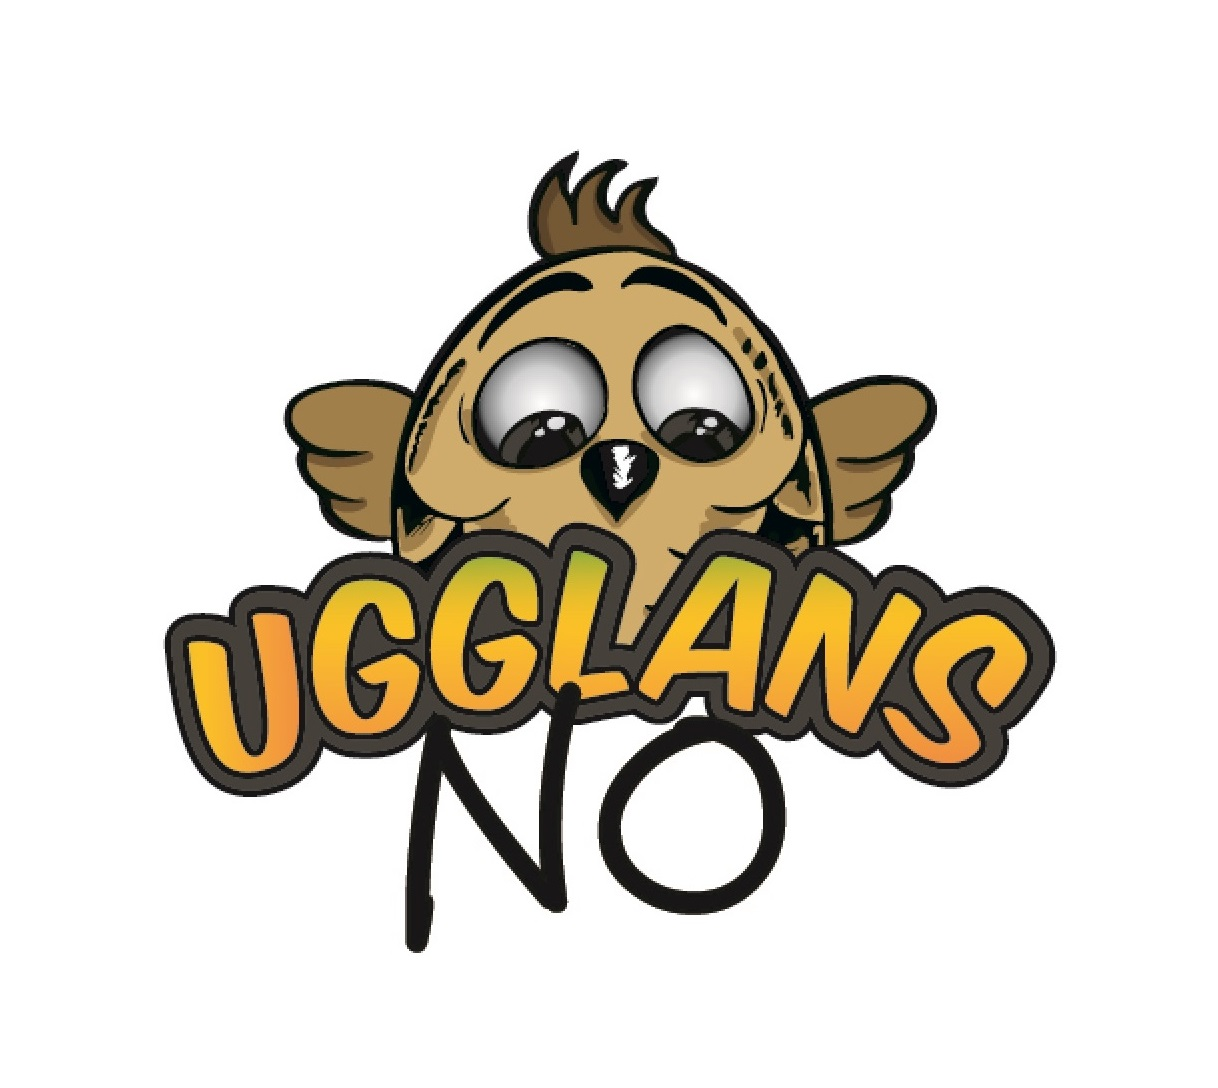 Ugglans NO